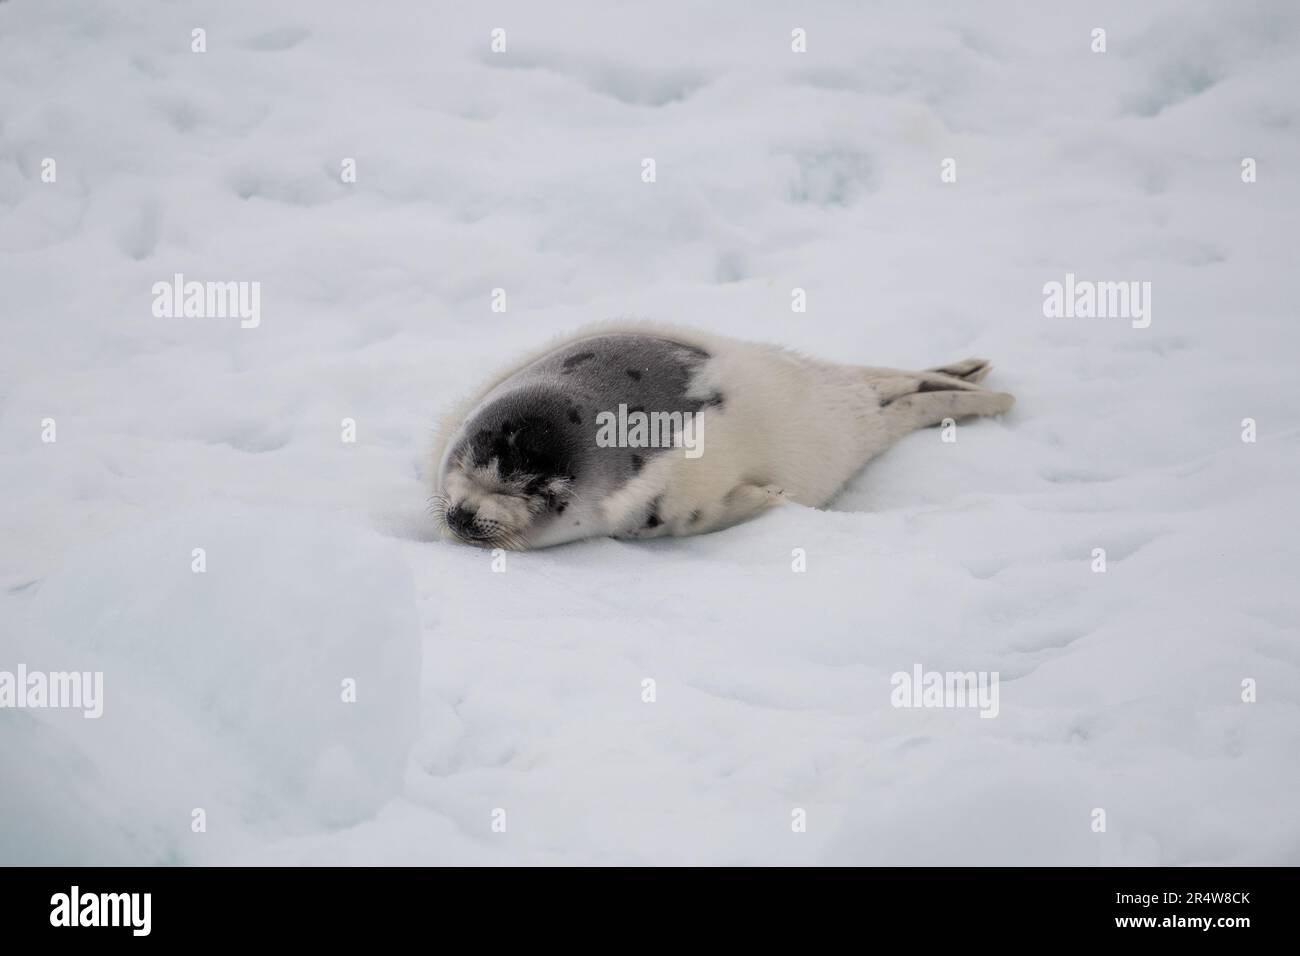 Una piccola foca bianca che galleggia su neve bianca e ghiaccio. La foca grigia selvaggia ha lunghi frullati, un volto triste e una pelliccia di colore chiaro Foto Stock